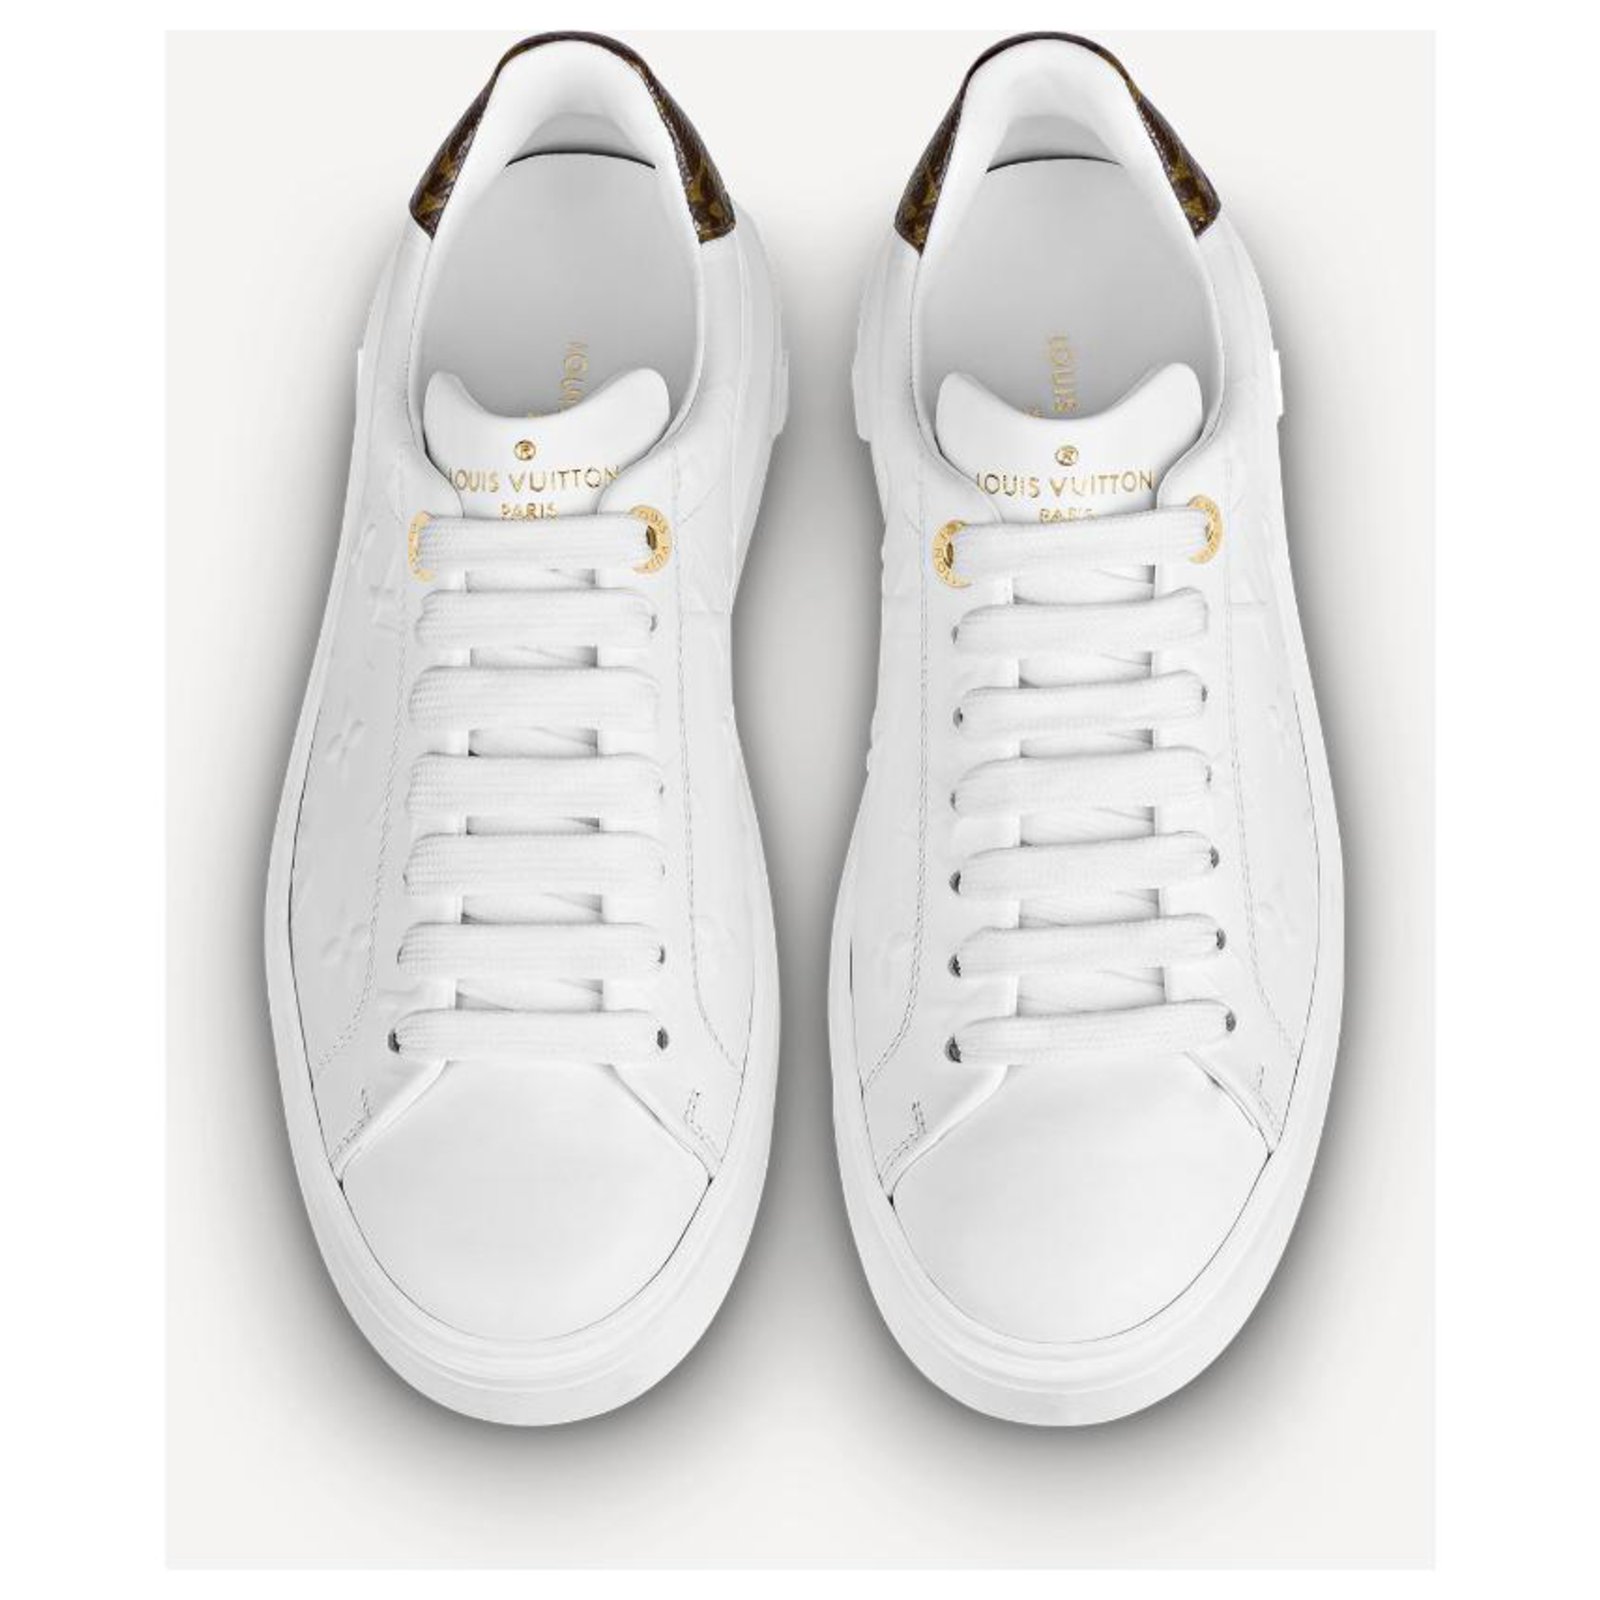 Louis Vuitton Time Out Sneaker Damen Schuhe weiß leder